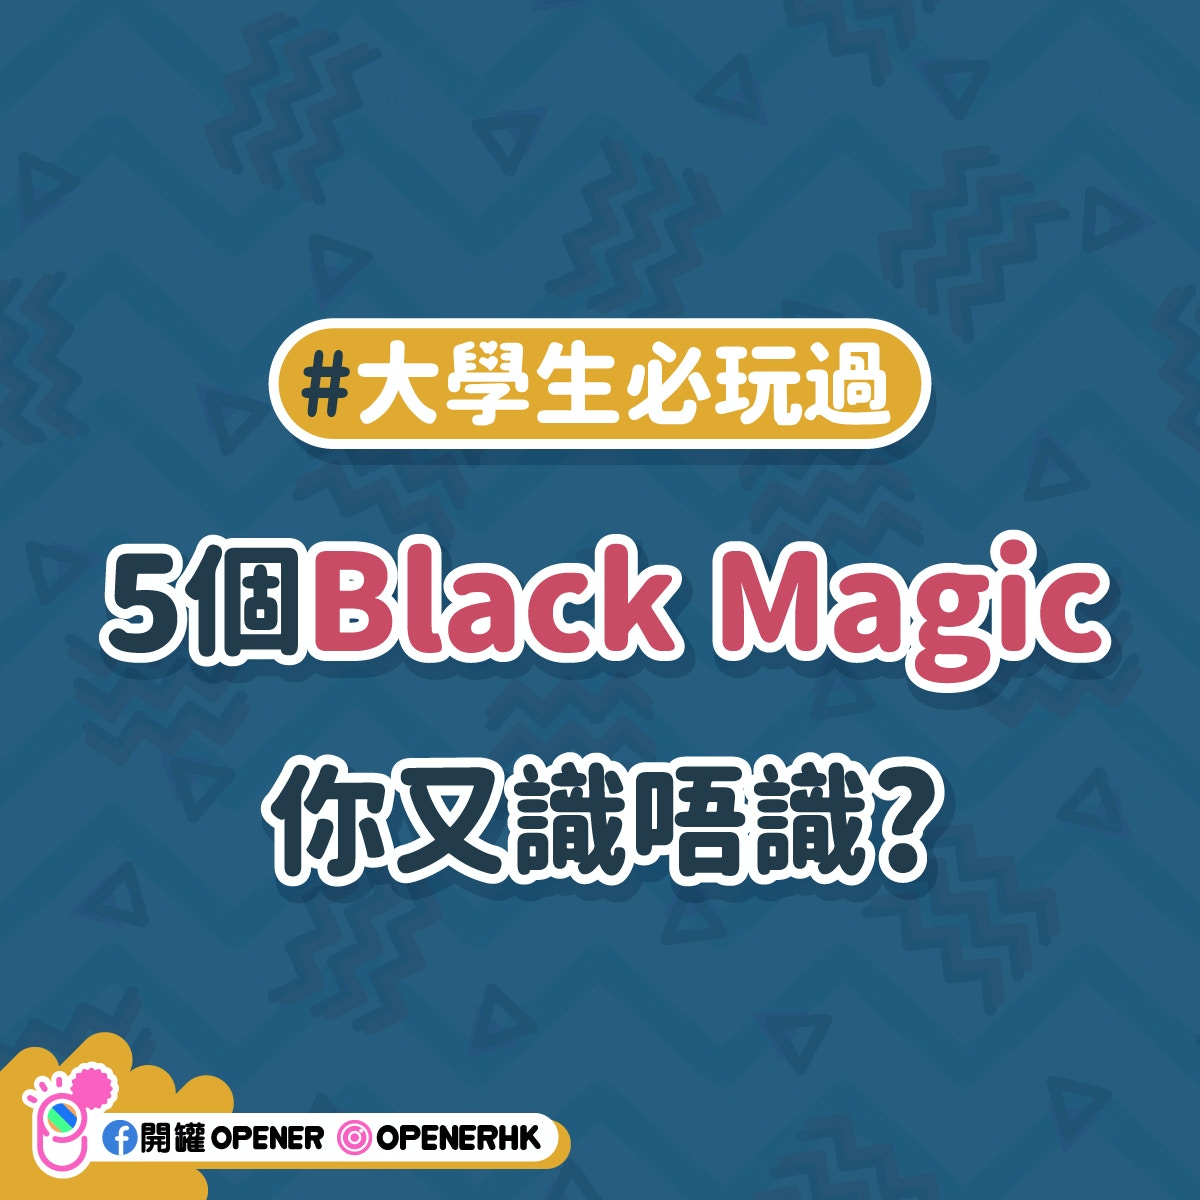 Magic æ¸¸æˆ� black